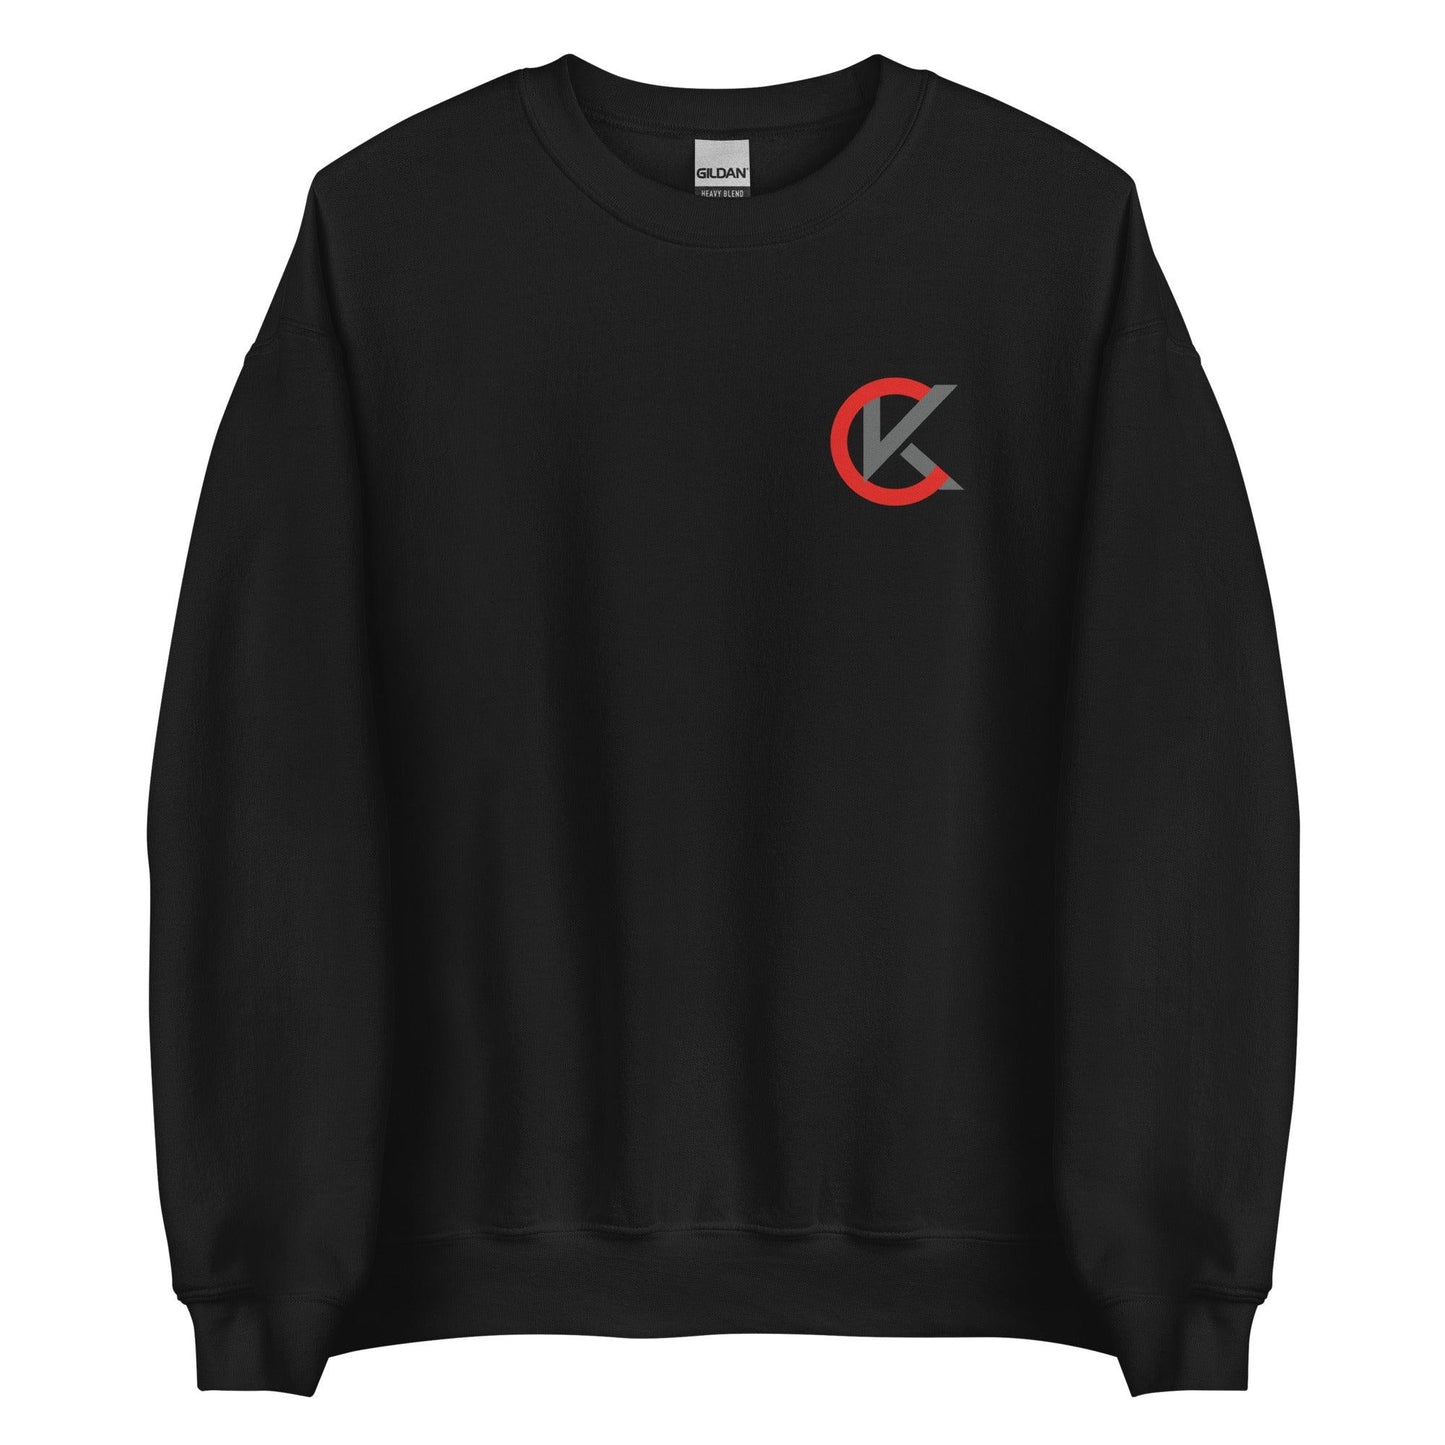 Cooper Kinney "Elite" Sweatshirt - Fan Arch